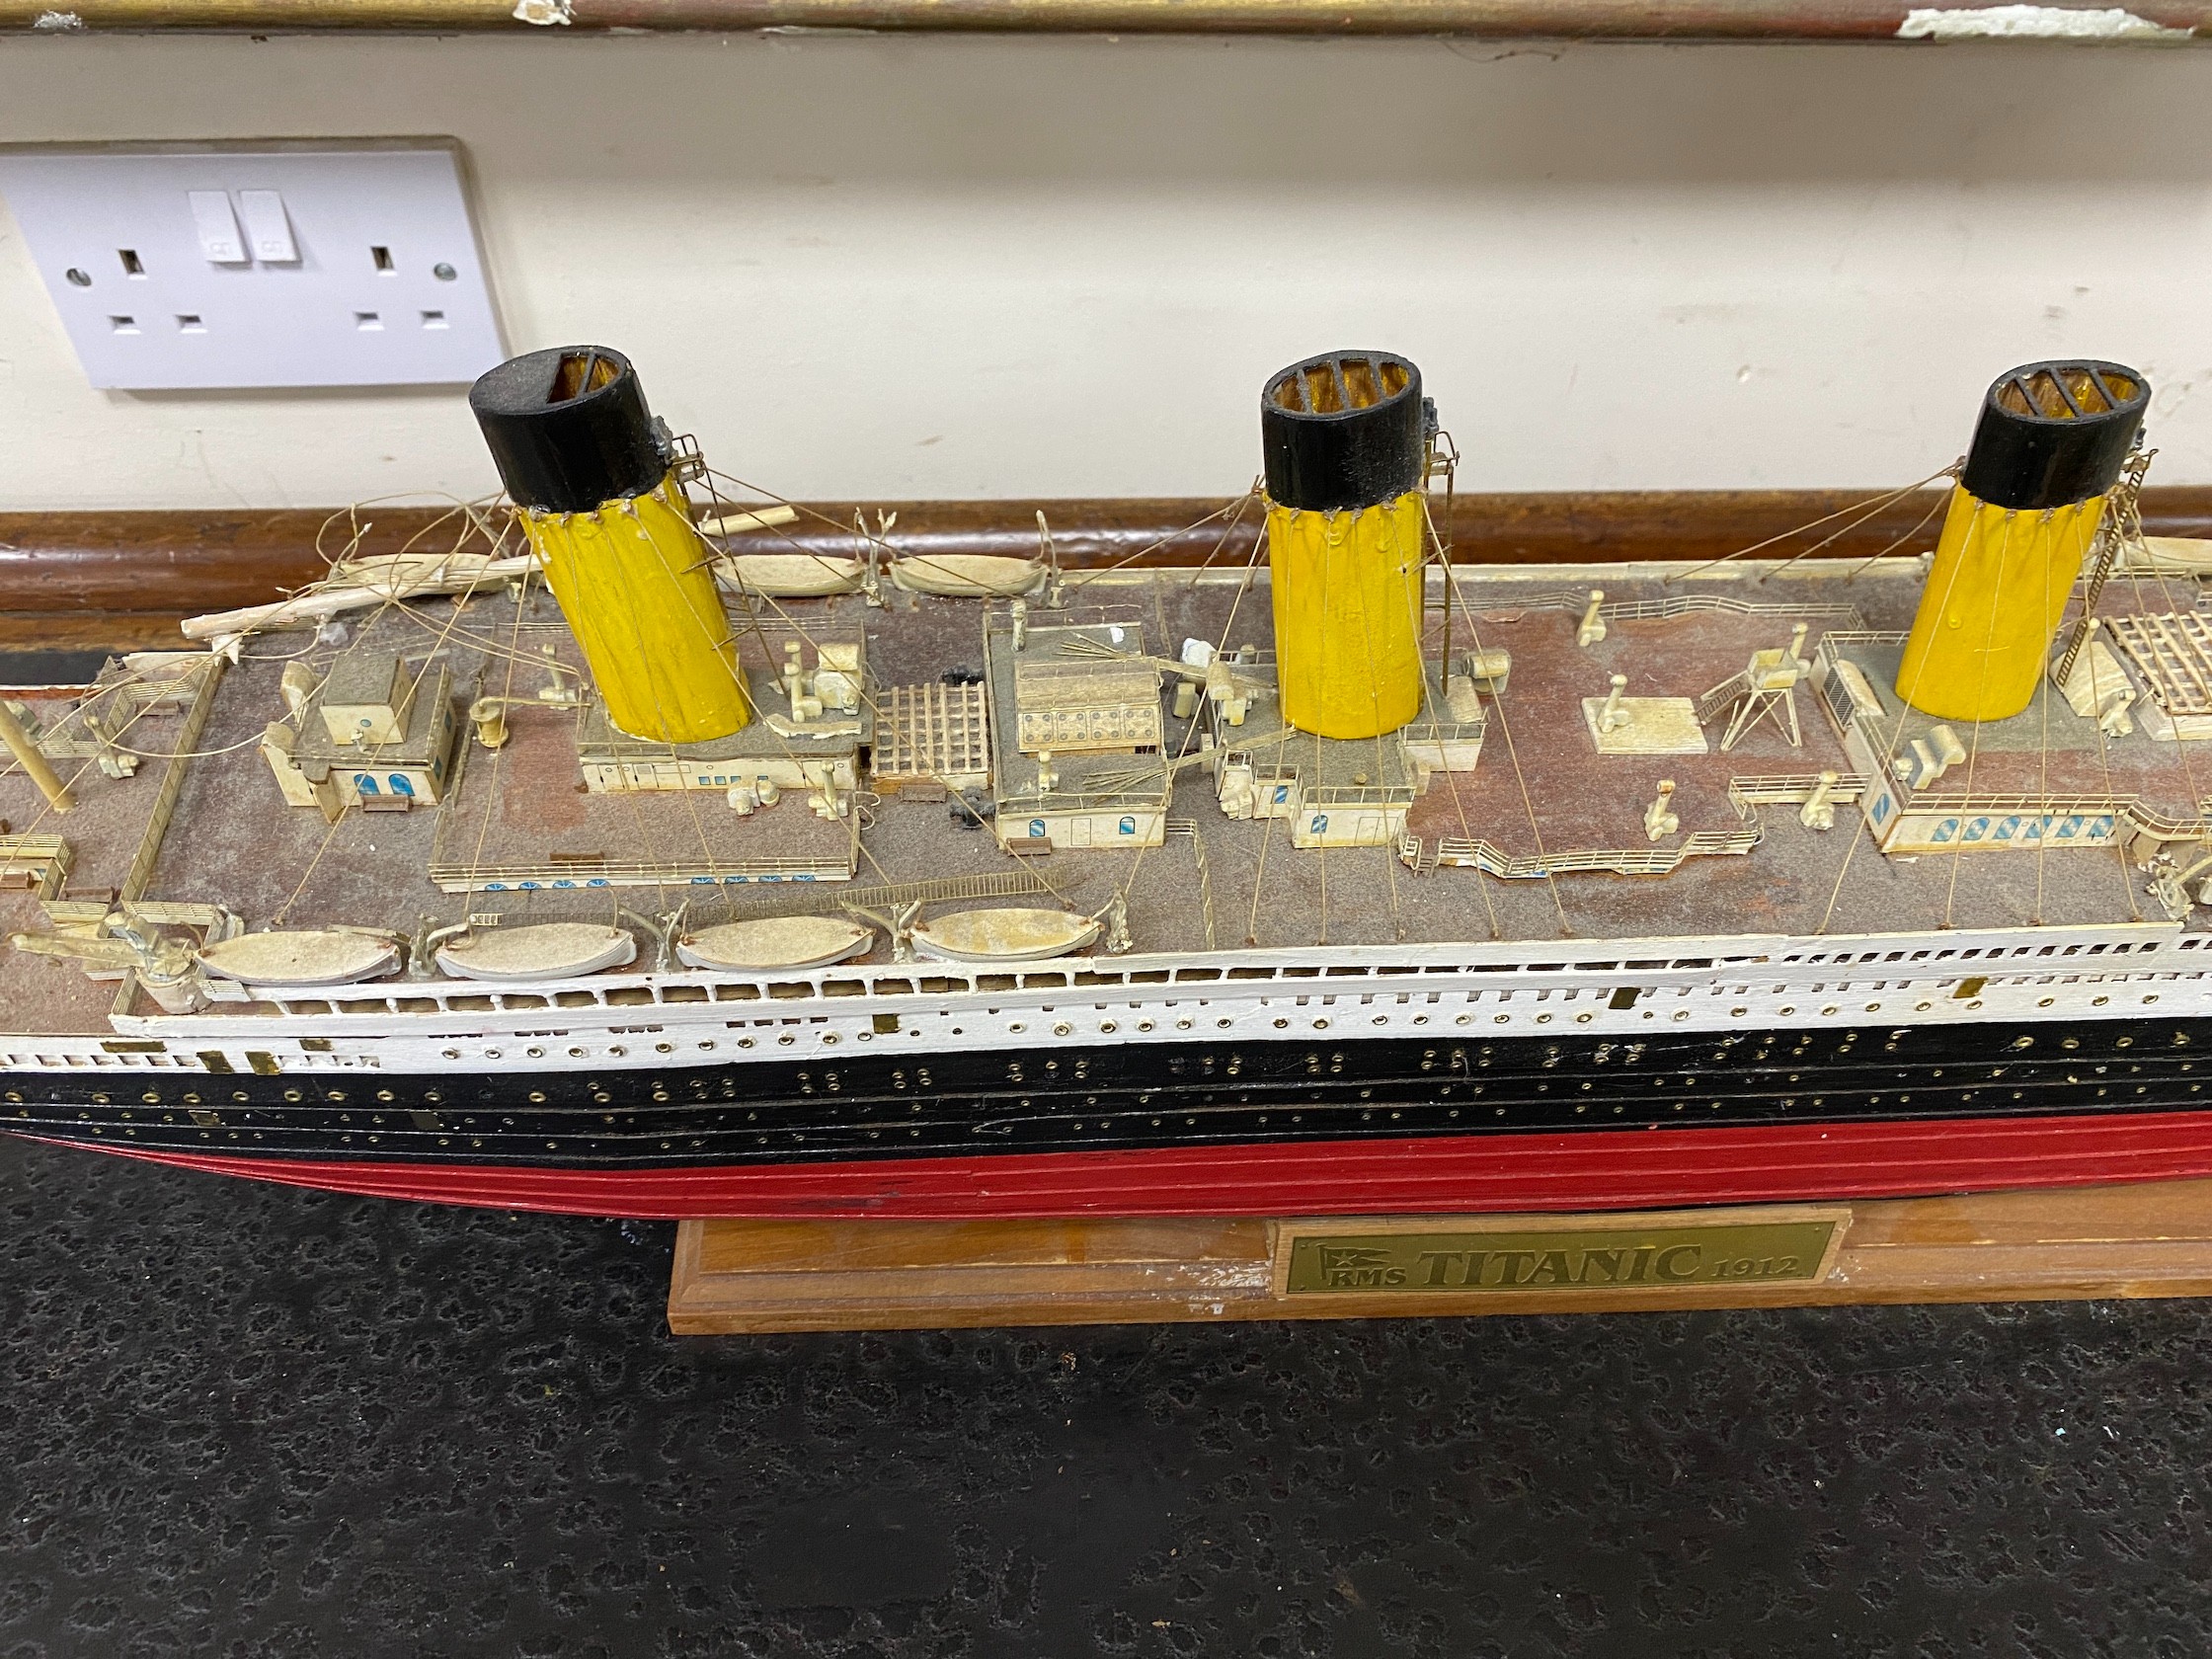 A kit built model of the Titanic, length 109cm